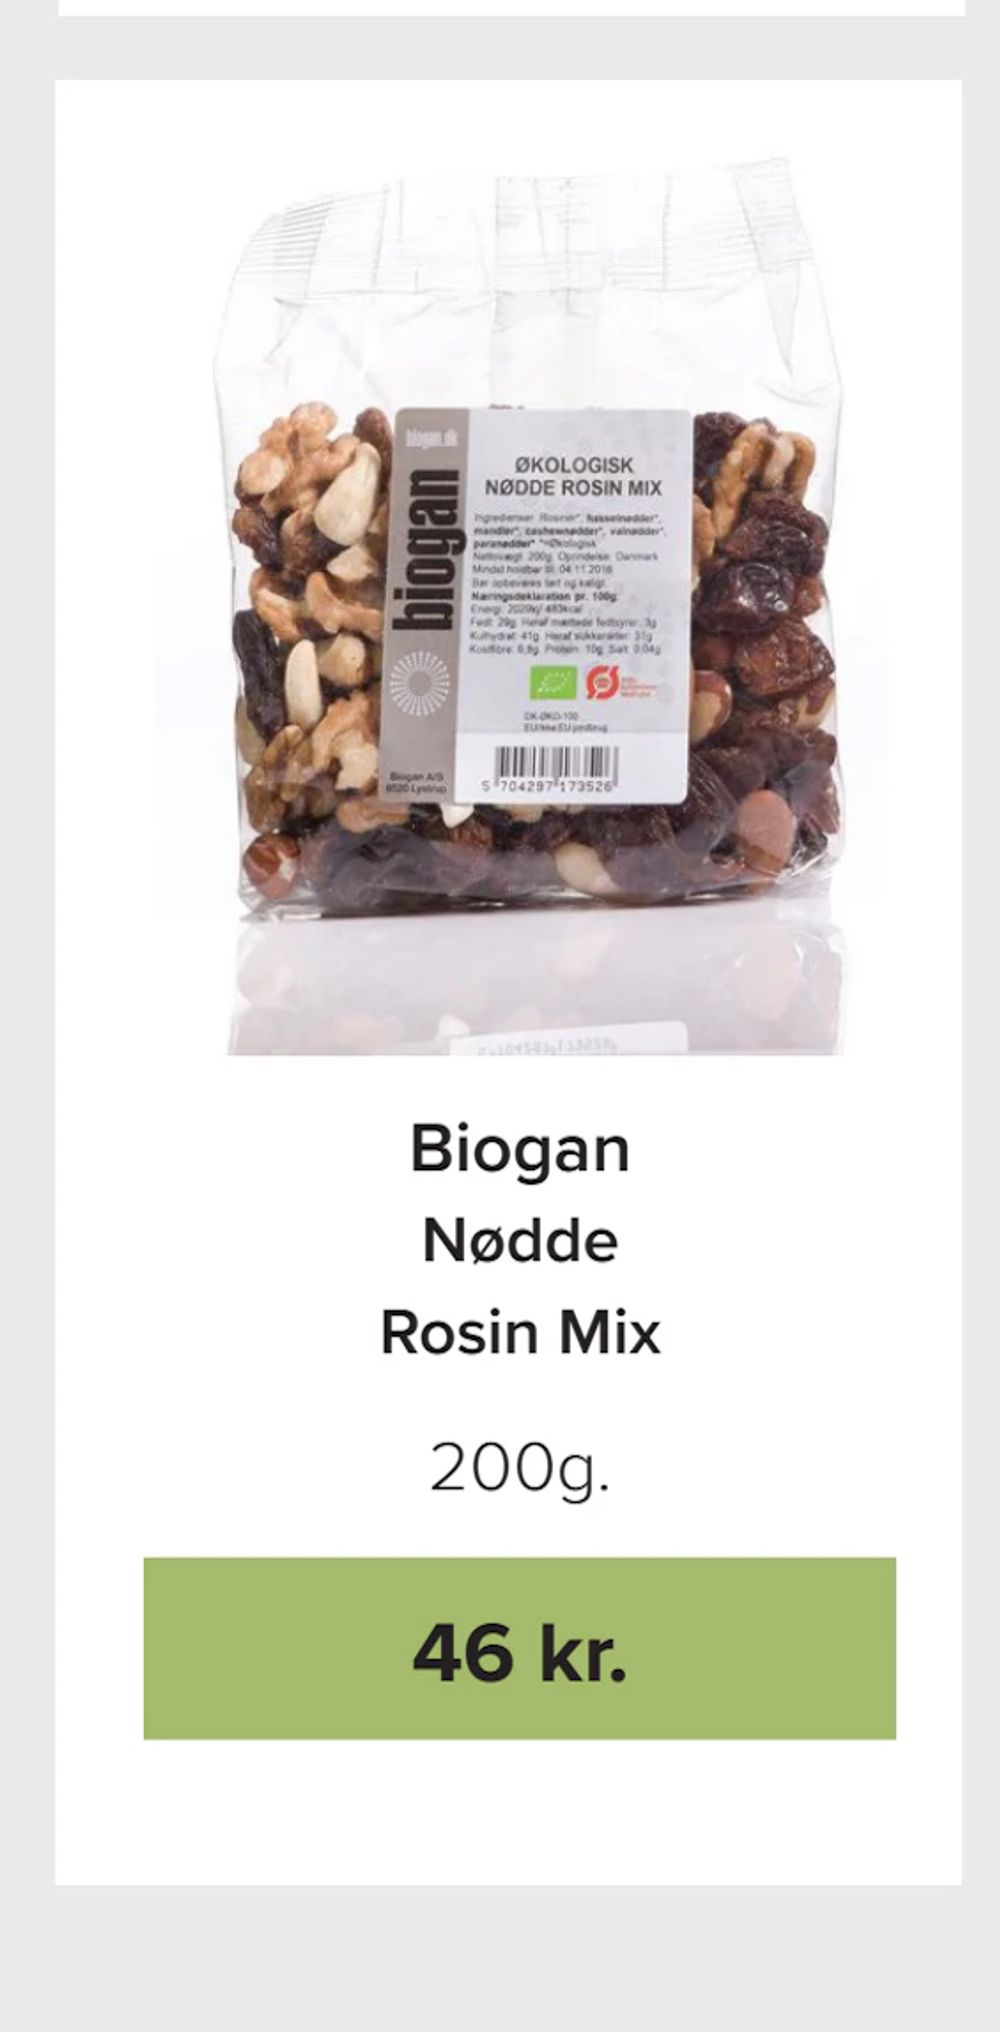 Tilbud på Nødde Rosin Mix fra Helsemin til 46 kr.